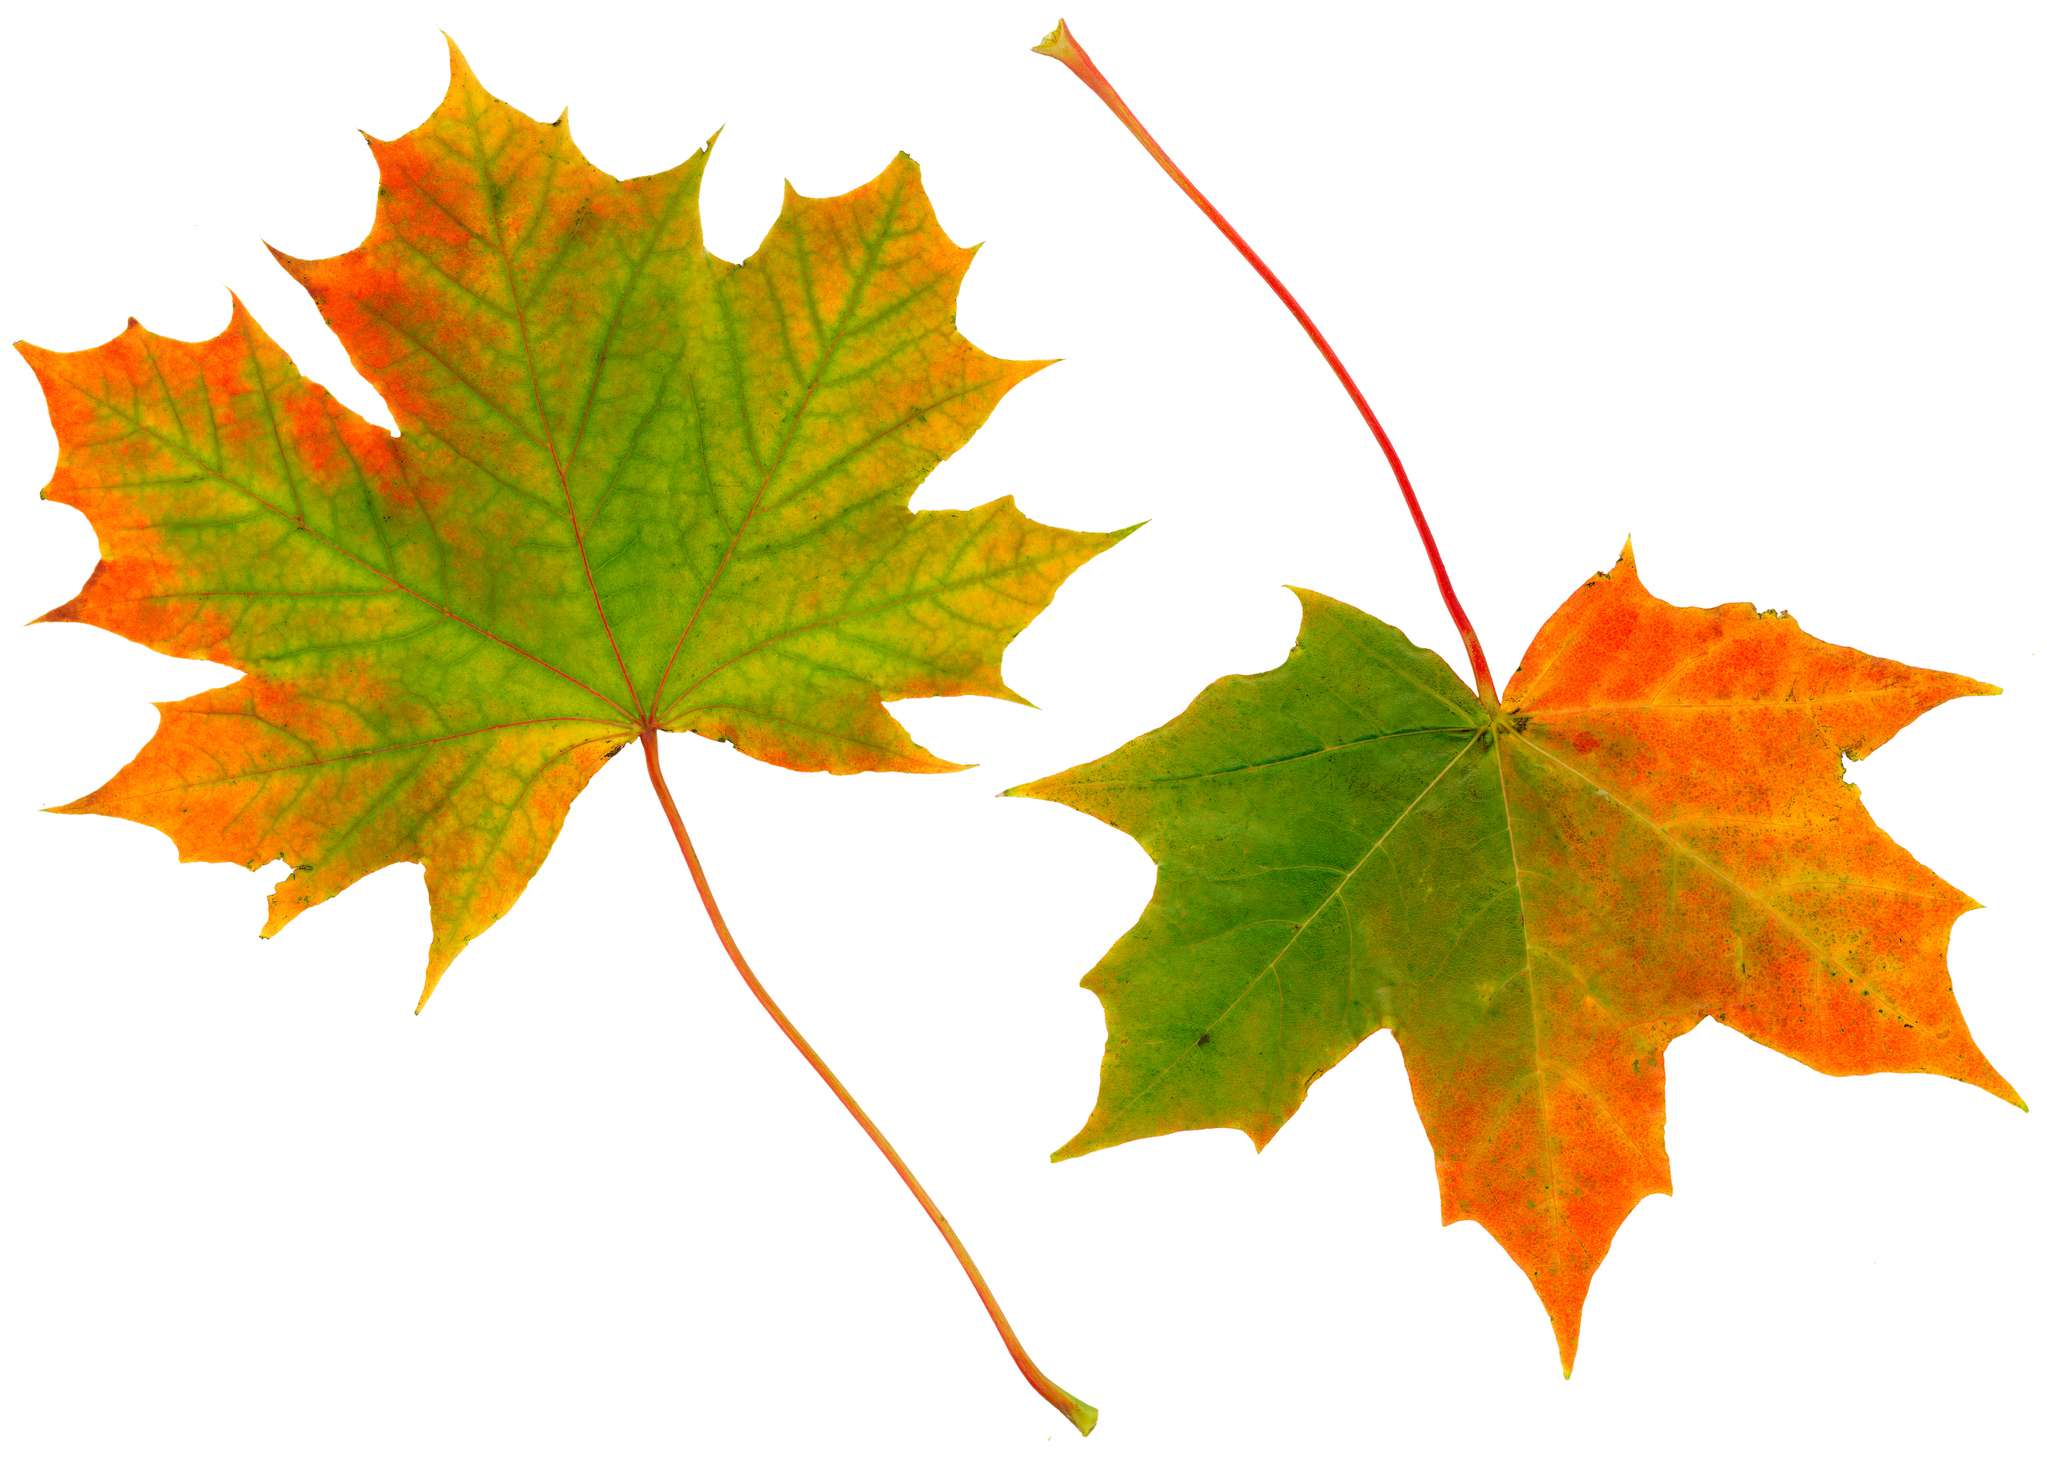 Dos hojas de arce cambiando de color de verde a rojo